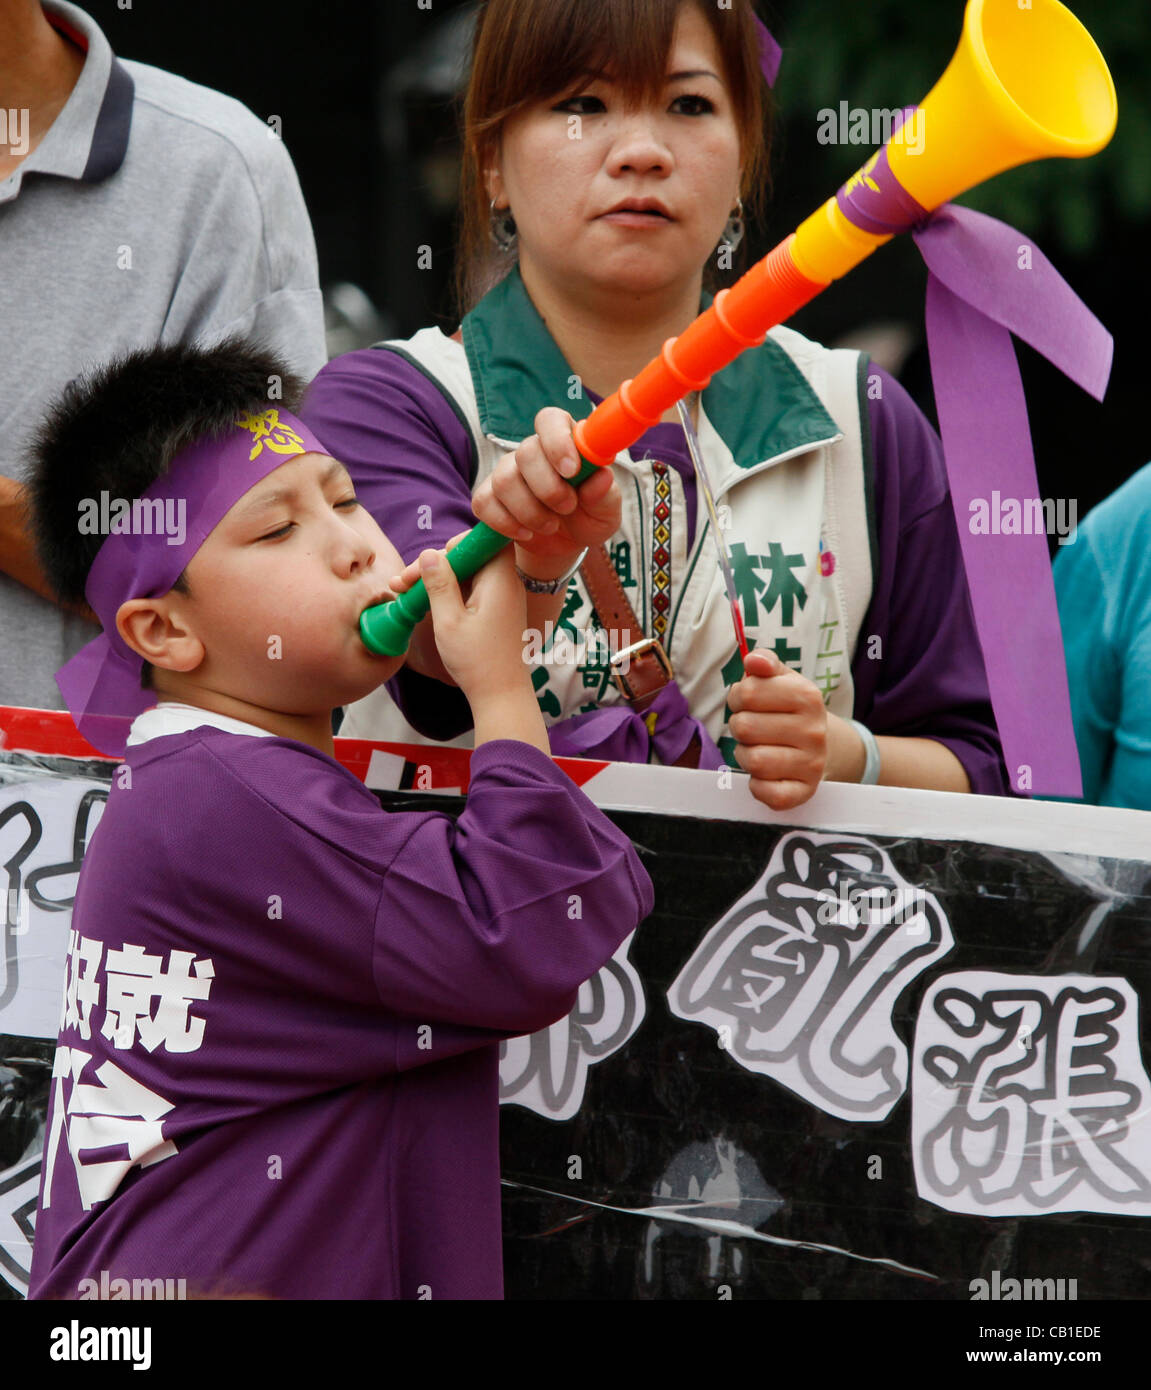 Taiwan, Taichung, 20. Mai 2012. Anhänger der Demokratischen Fortschrittspartei anzeigen Plakate und schreien ihre Wut an Präsident Ma Ying-Jeou aufgrund der umstrittenen Richtlinien am Tag seiner Amtseinführung für eine zweite Amtszeit. Stockfoto